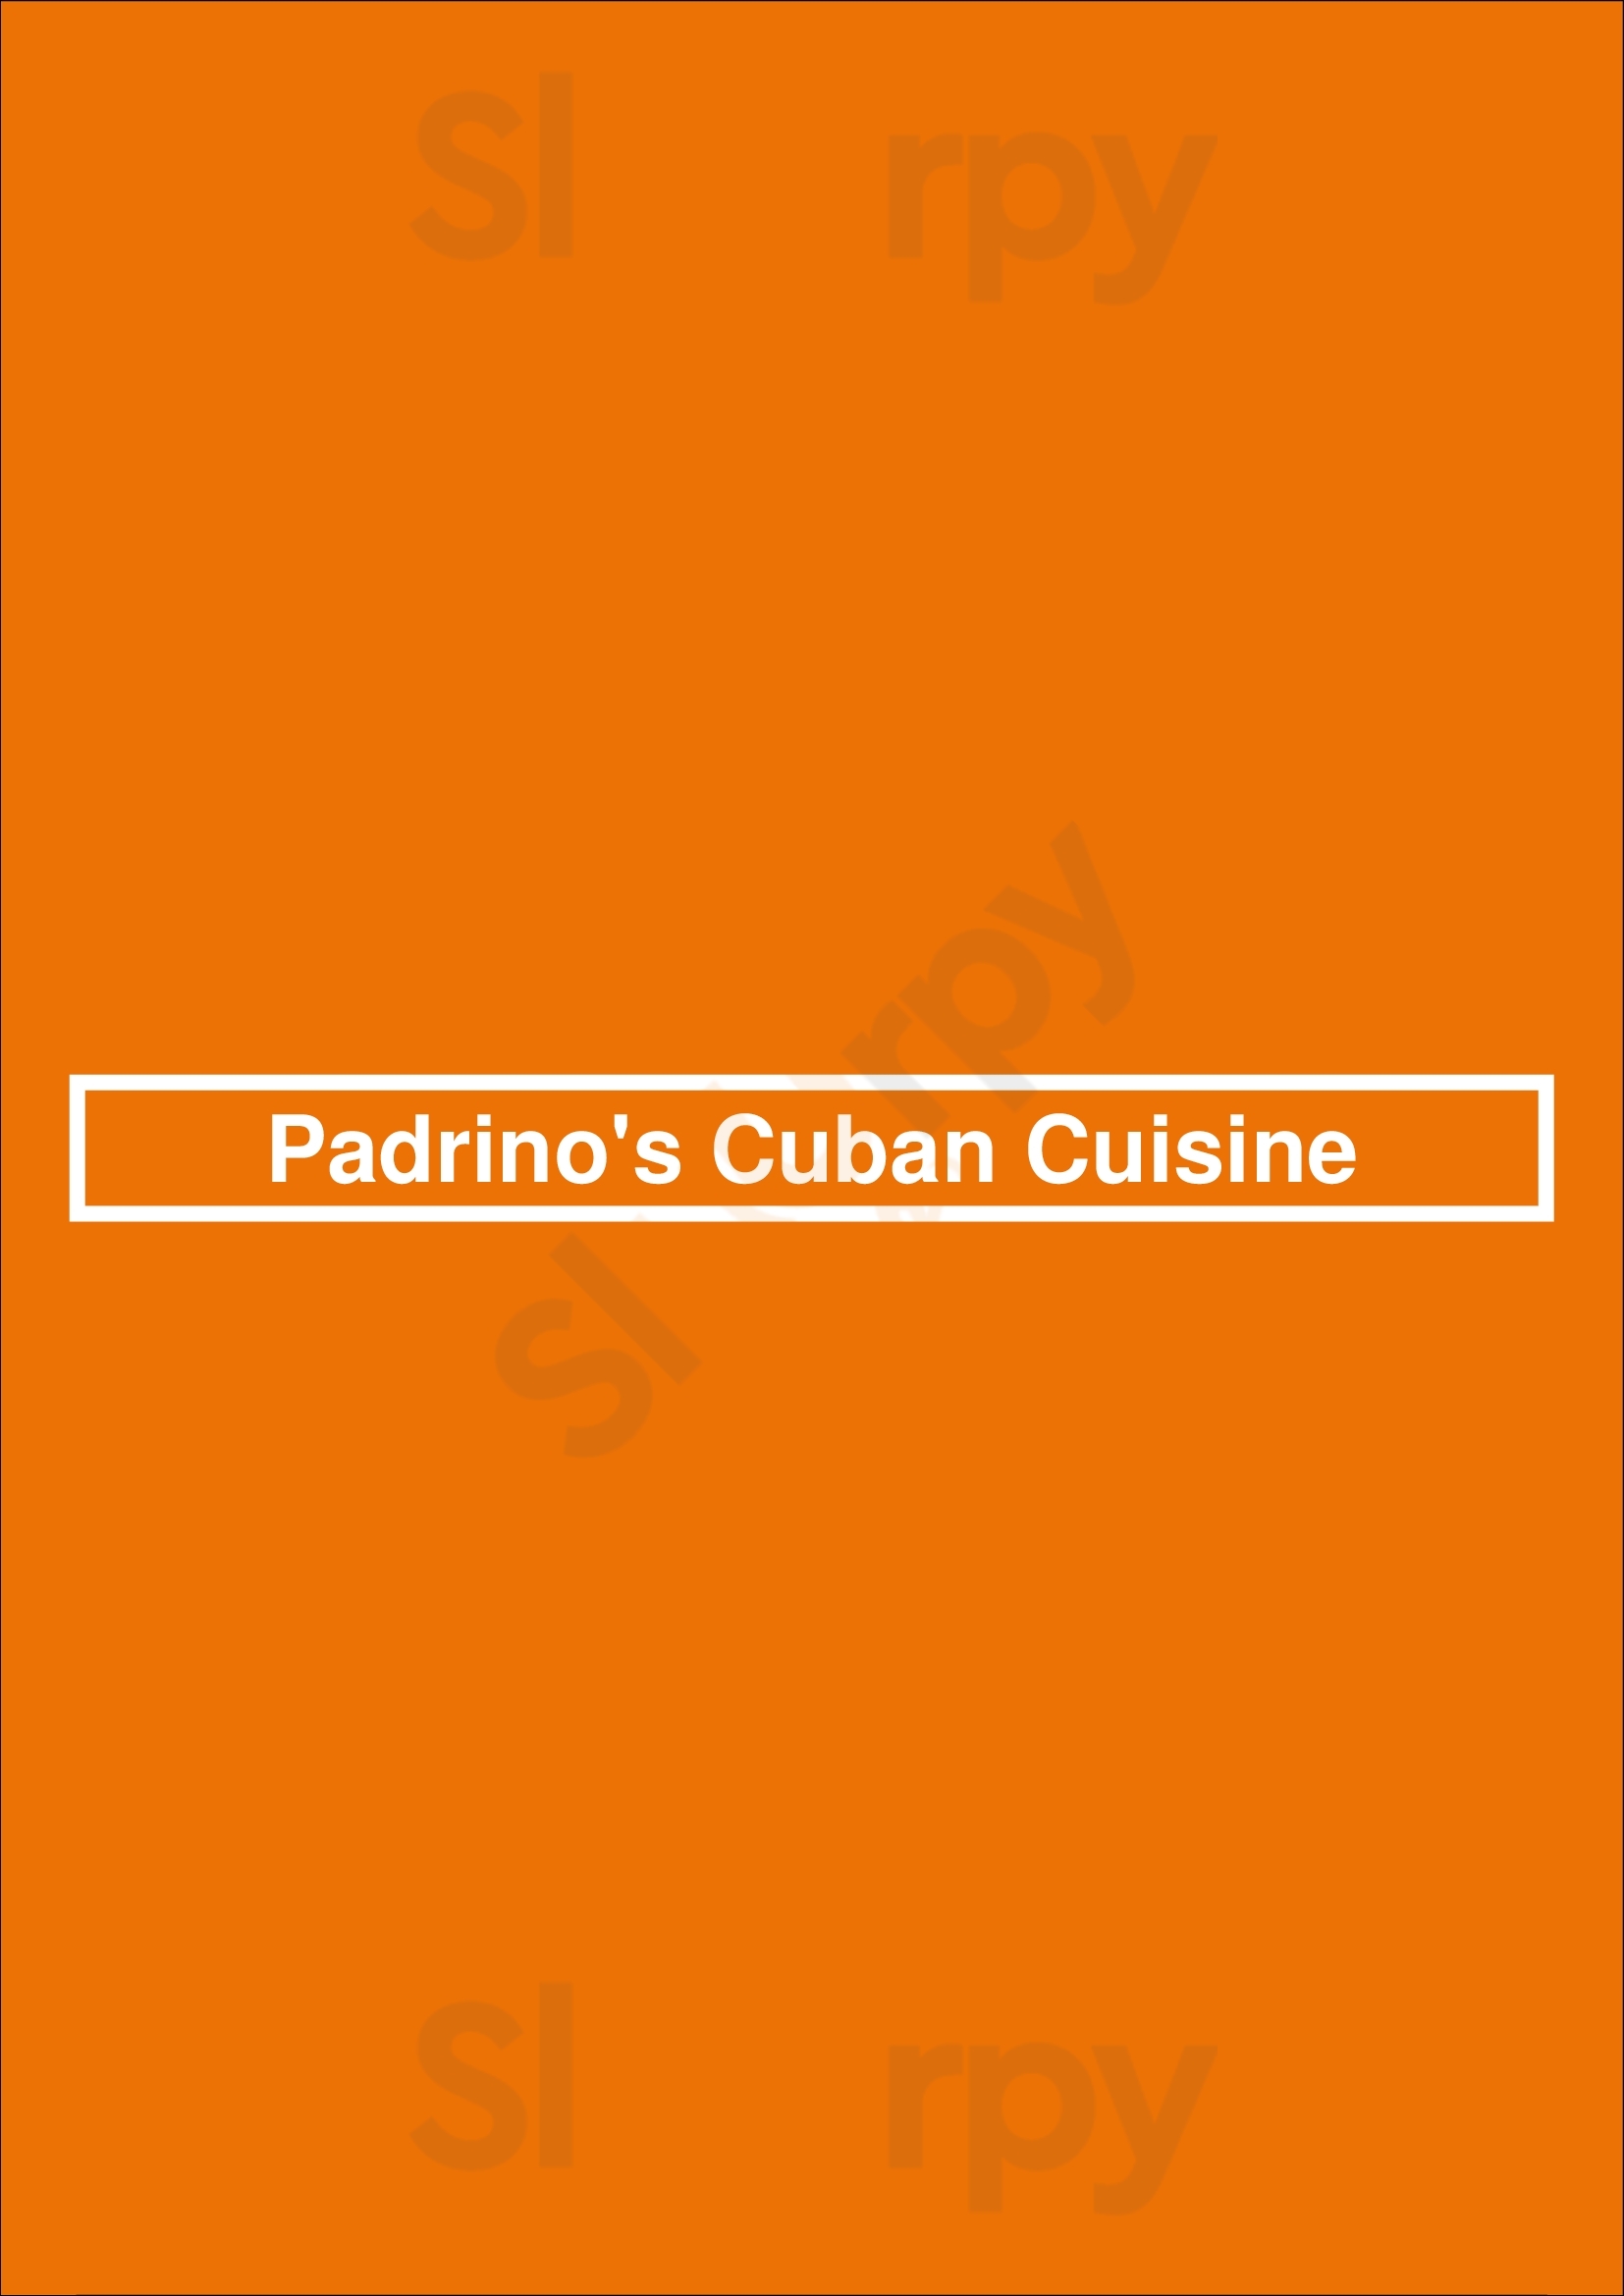 Padrino's Cuban Cuisine Fort Lauderdale Menu - 1